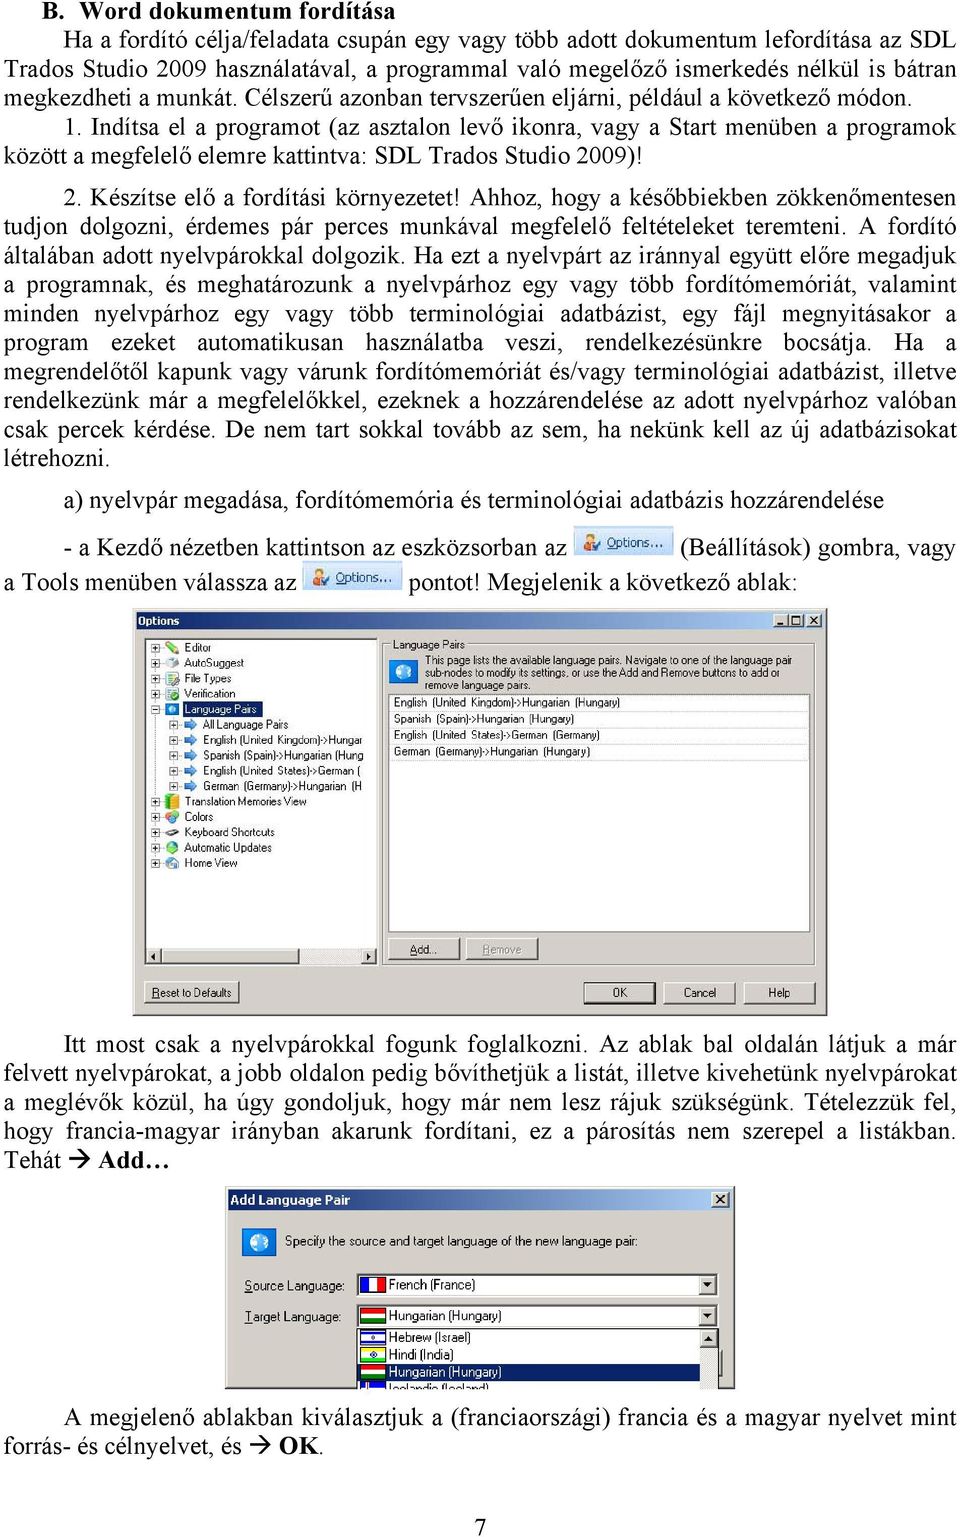 Indítsa el a programot (az asztalon levő ikonra, vagy a Start menüben a programok között a megfelelő elemre kattintva: SDL Trados Studio 2009)! 2. Készítse elő a fordítási környezetet!